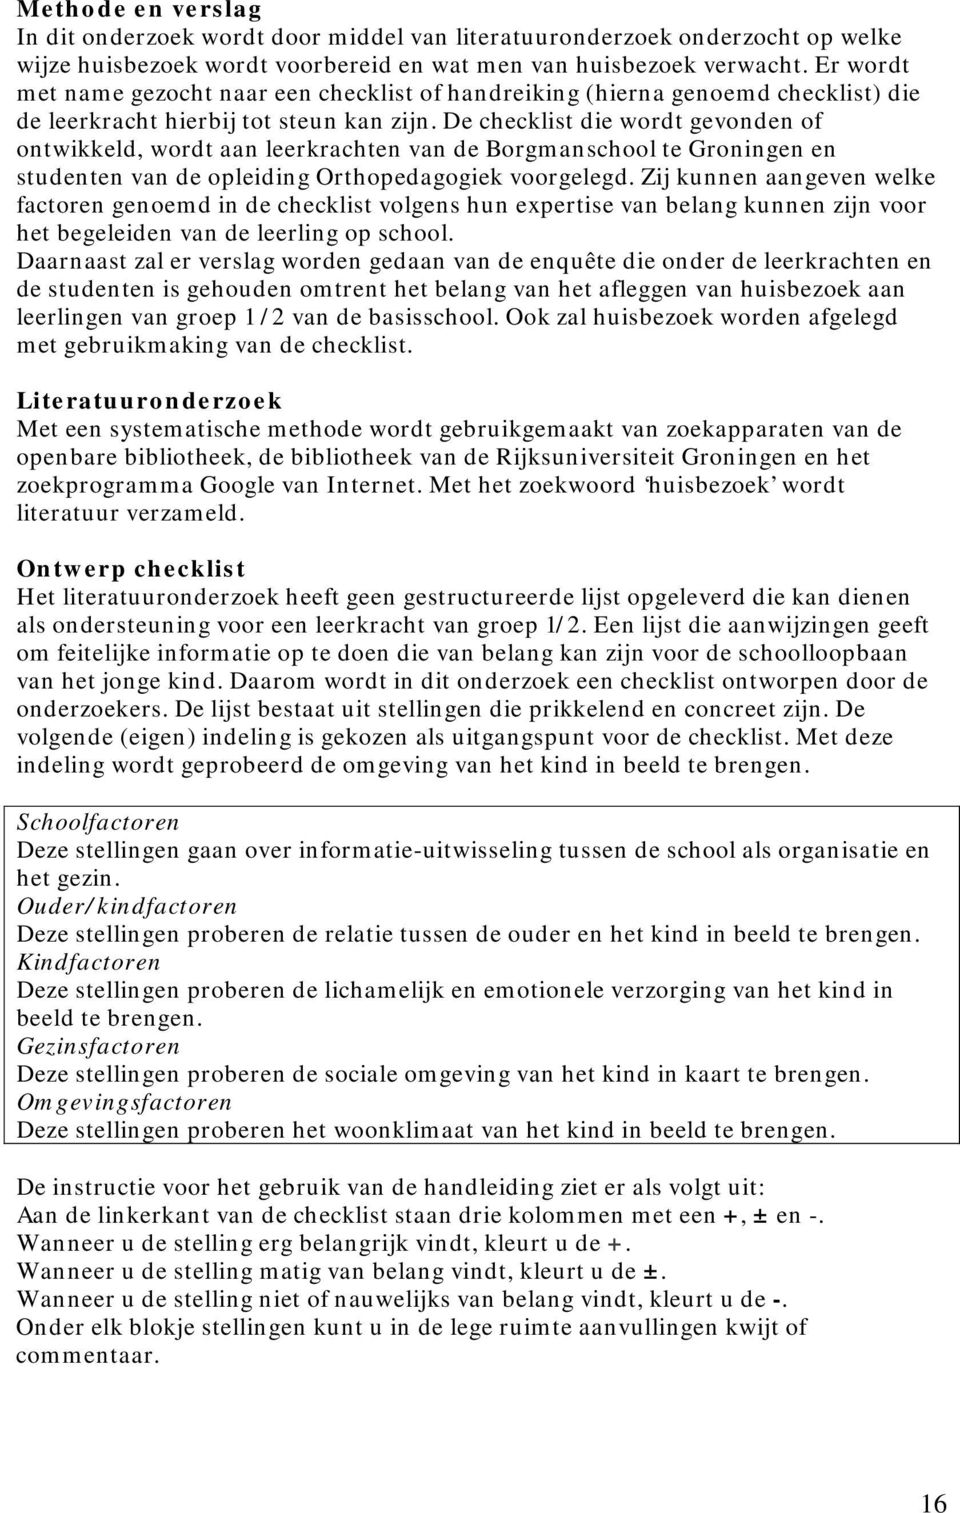 De checklist die wordt gevonden of ontwikkeld, wordt aan leerkrachten van de Borgmanschool te Groningen en studenten van de opleiding Orthopedagogiek voorgelegd.